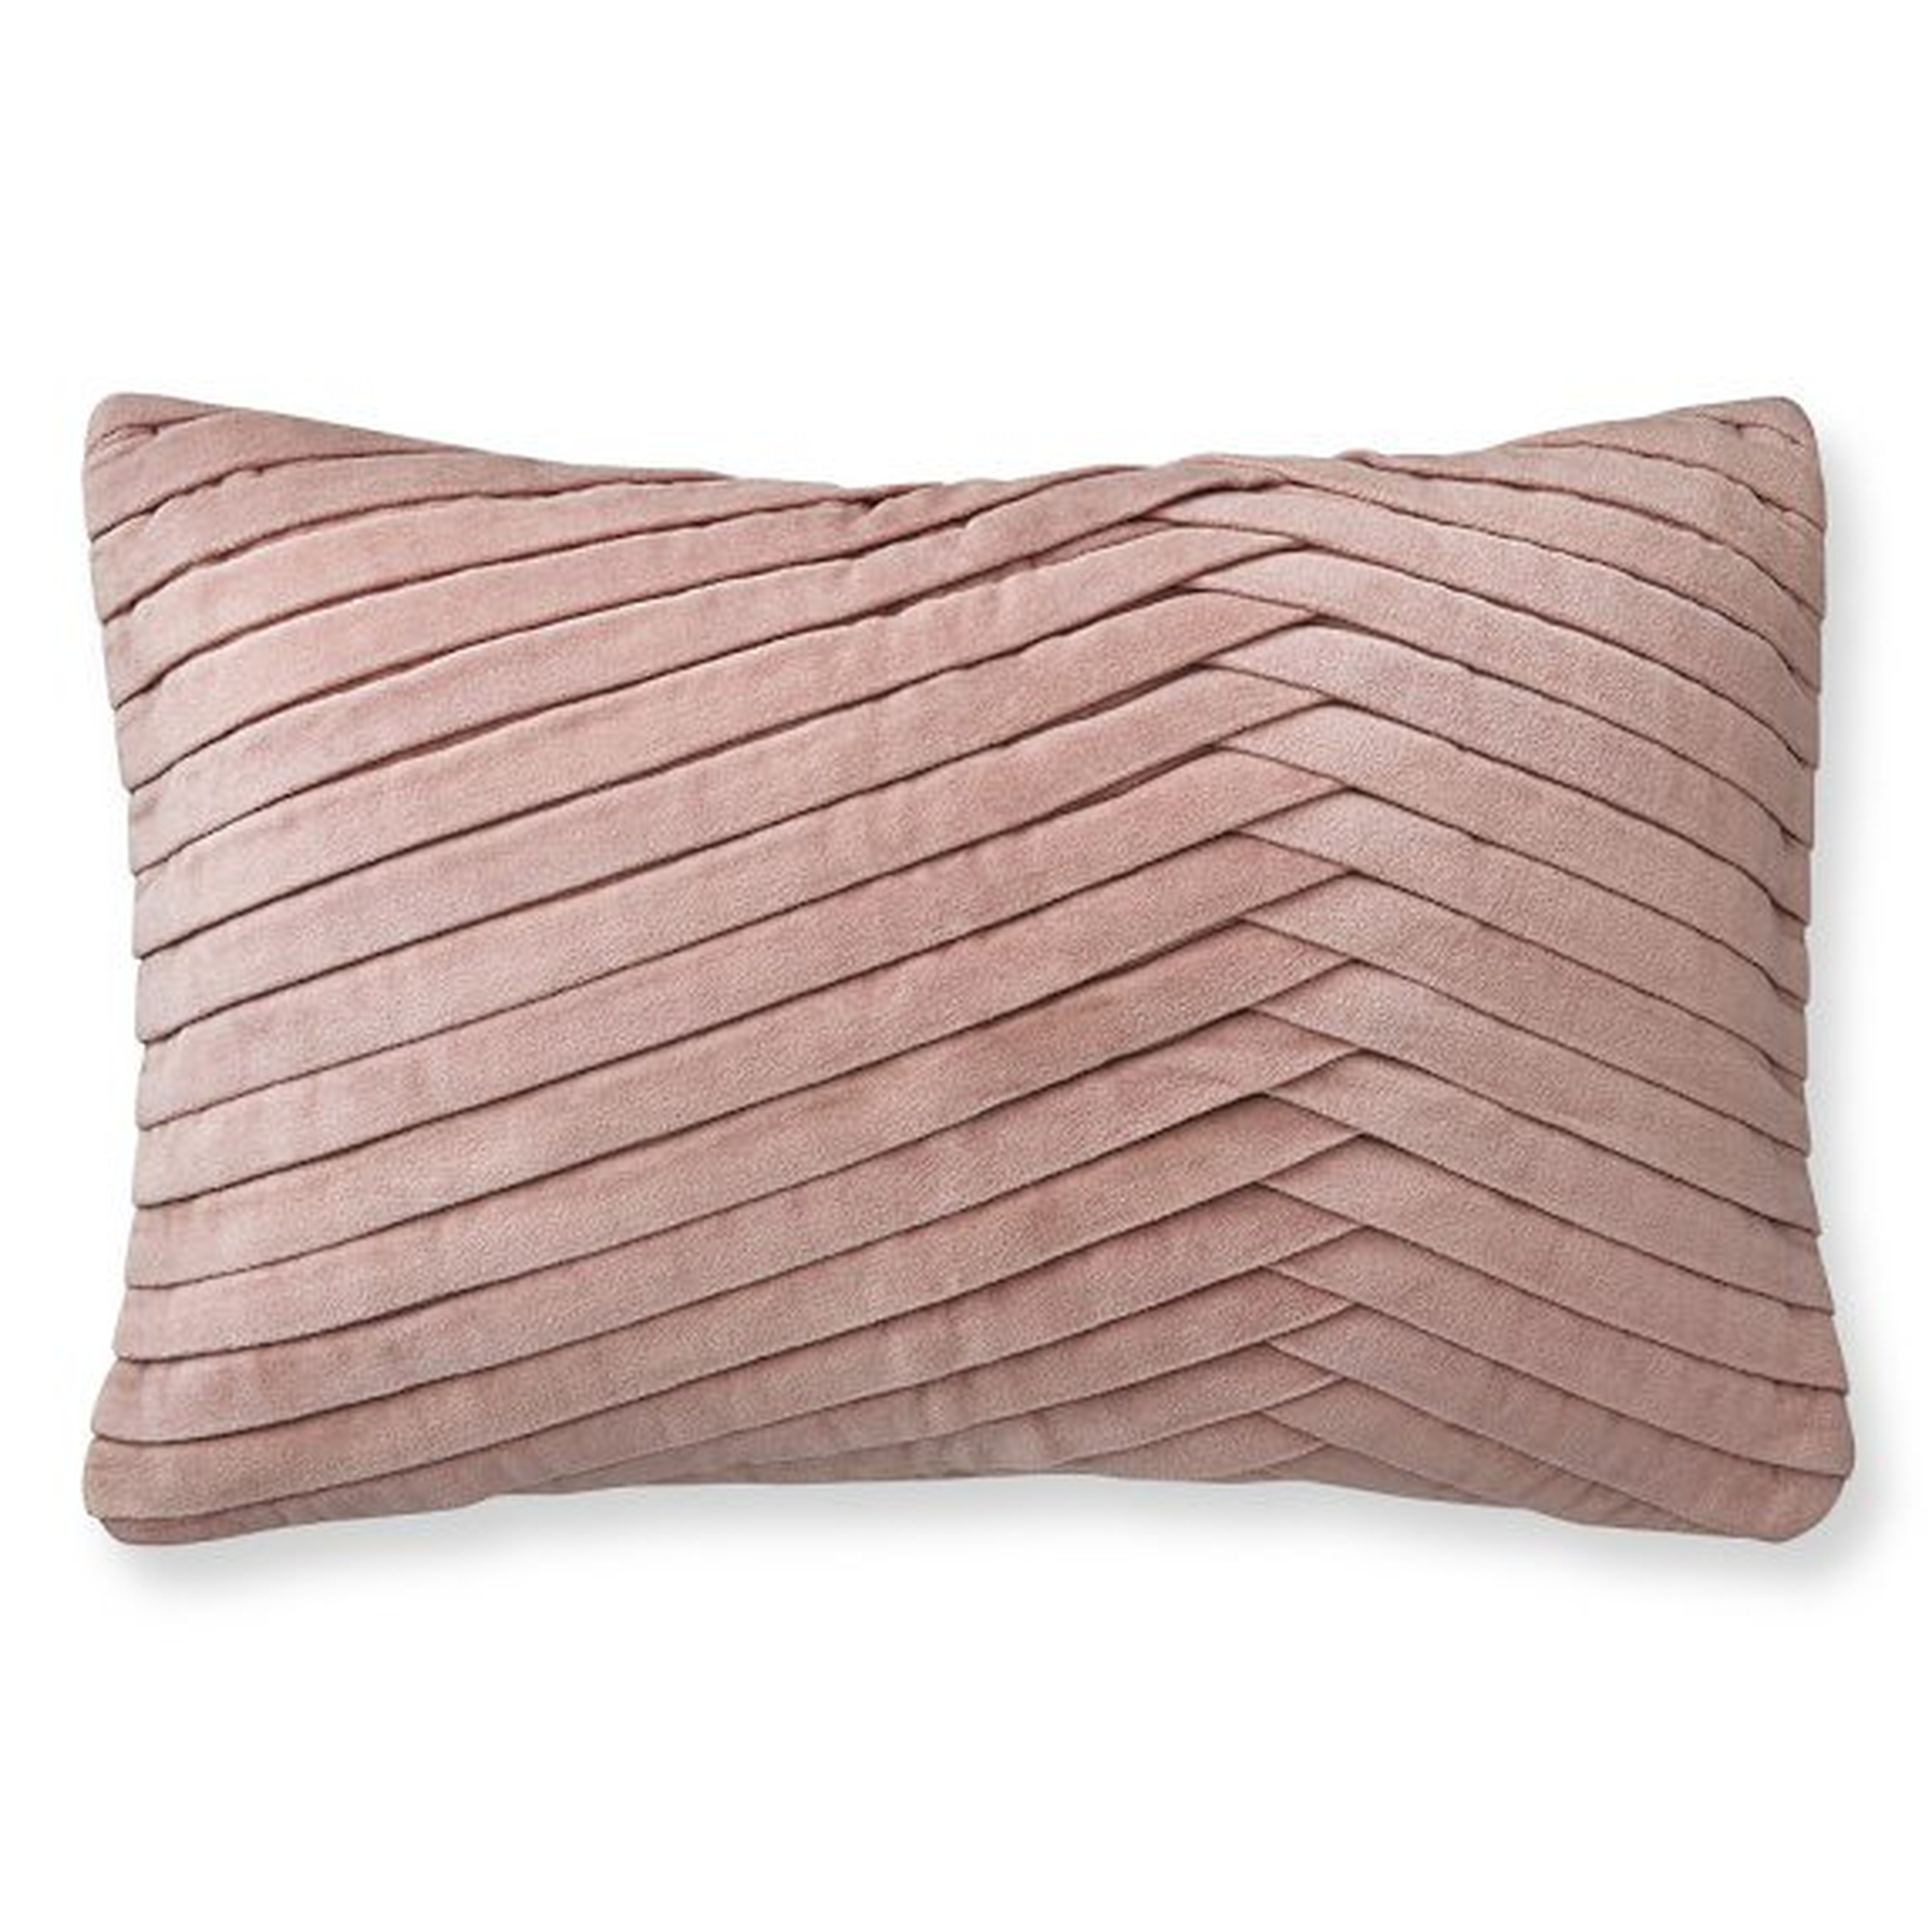 Pleated Velvet Lumbar Pillow Cover, Blush - Williams Sonoma